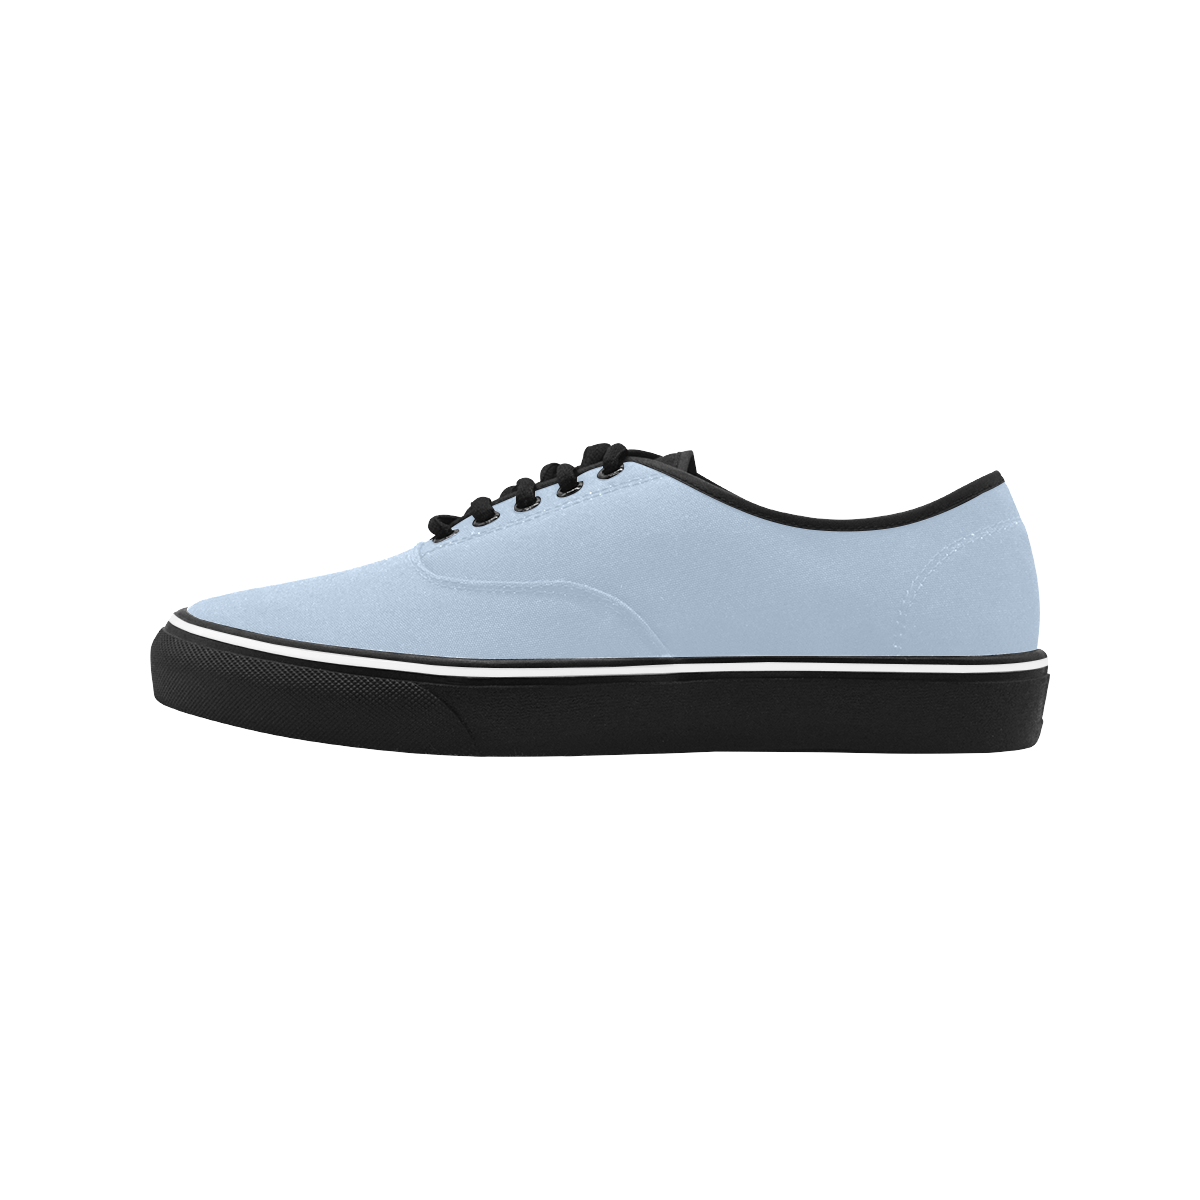 color light steel blue Classic Men's Canvas Low Top Shoes/Large (Model E001-4)